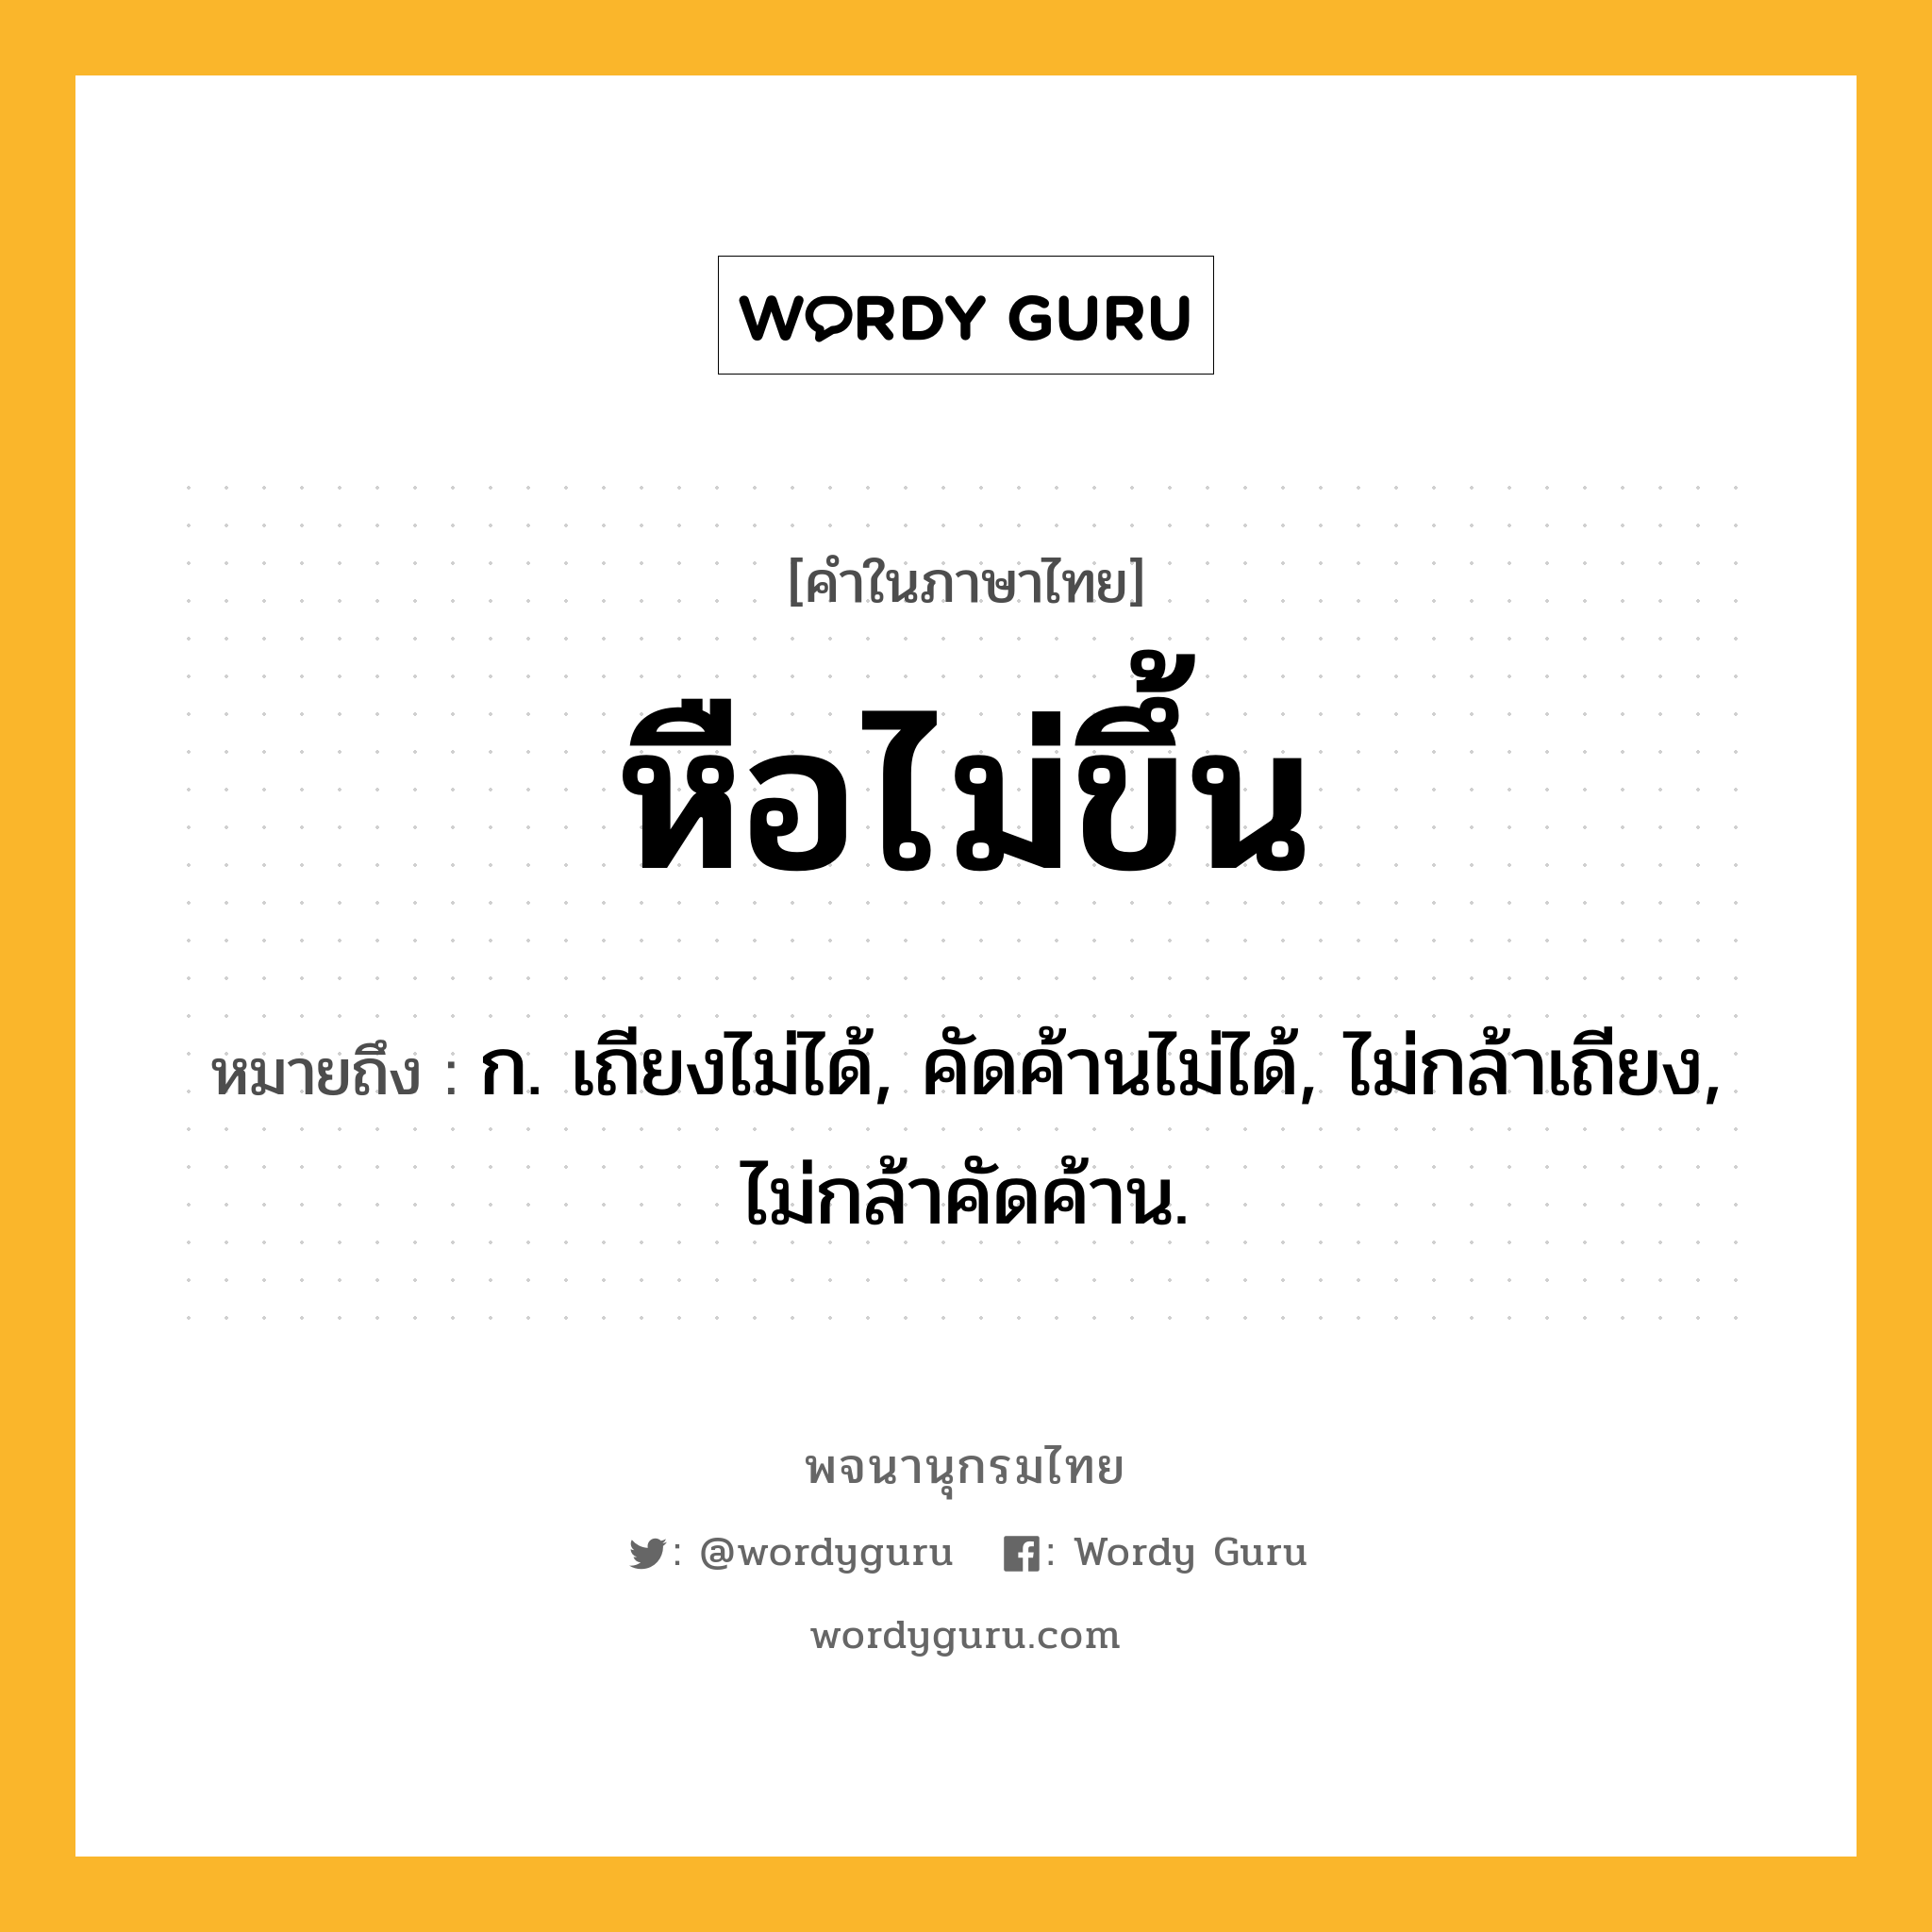 หือไม่ขึ้น หมายถึงอะไร?, คำในภาษาไทย หือไม่ขึ้น หมายถึง ก. เถียงไม่ได้, คัดค้านไม่ได้, ไม่กล้าเถียง, ไม่กล้าคัดค้าน.